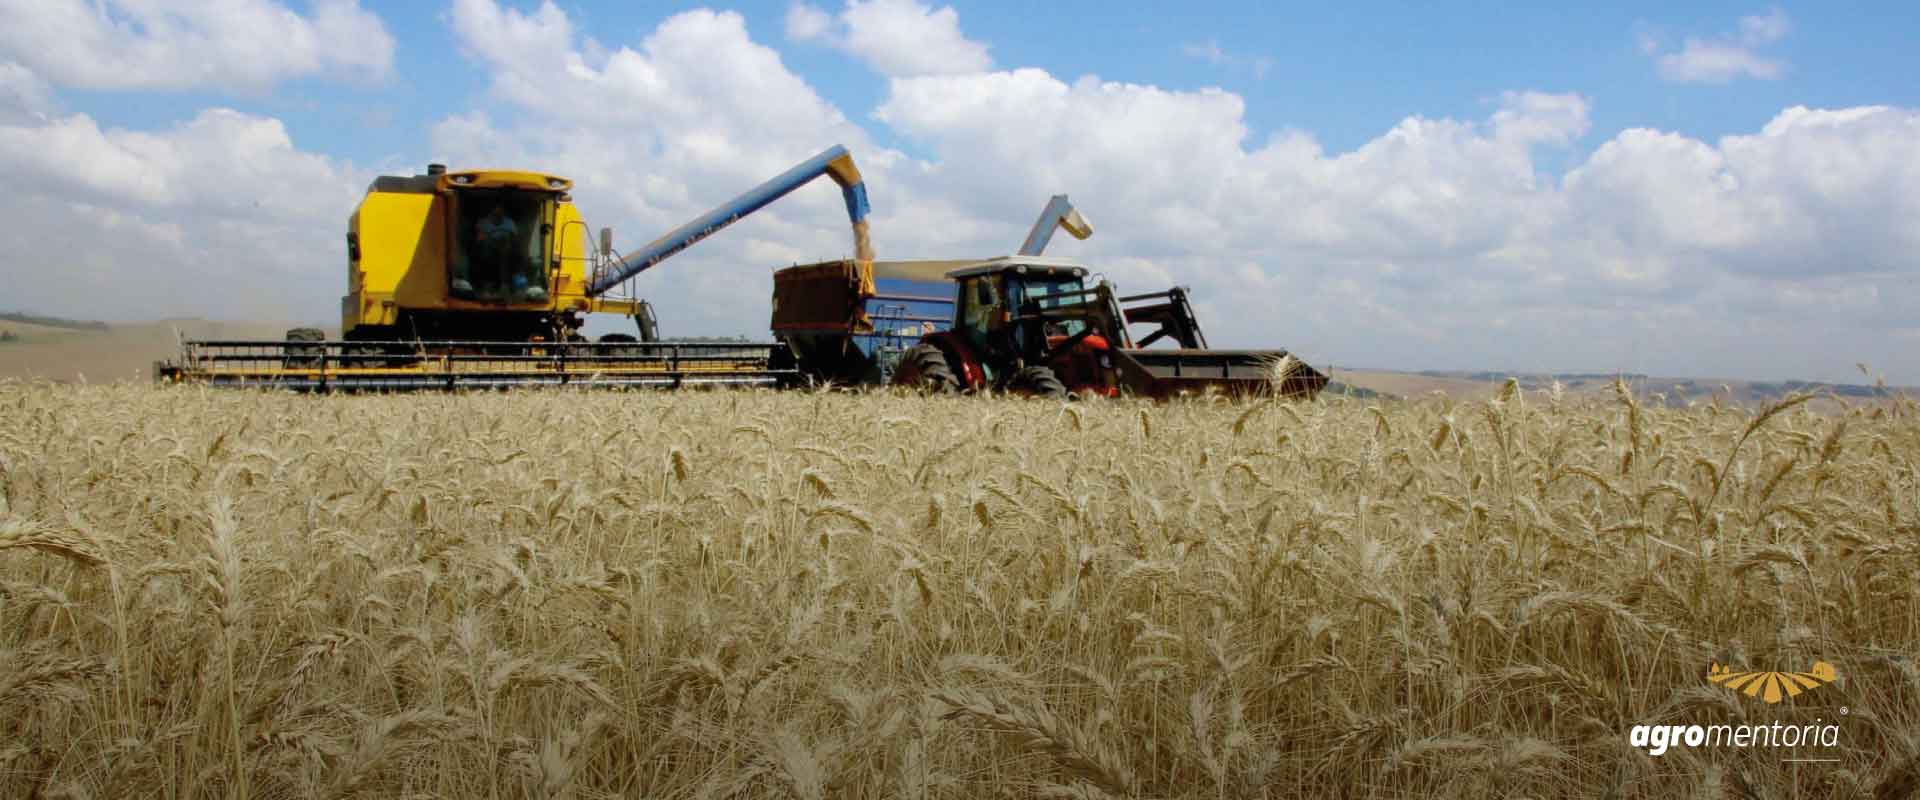 O que explica o aumento da produção de trigo no Brasil?